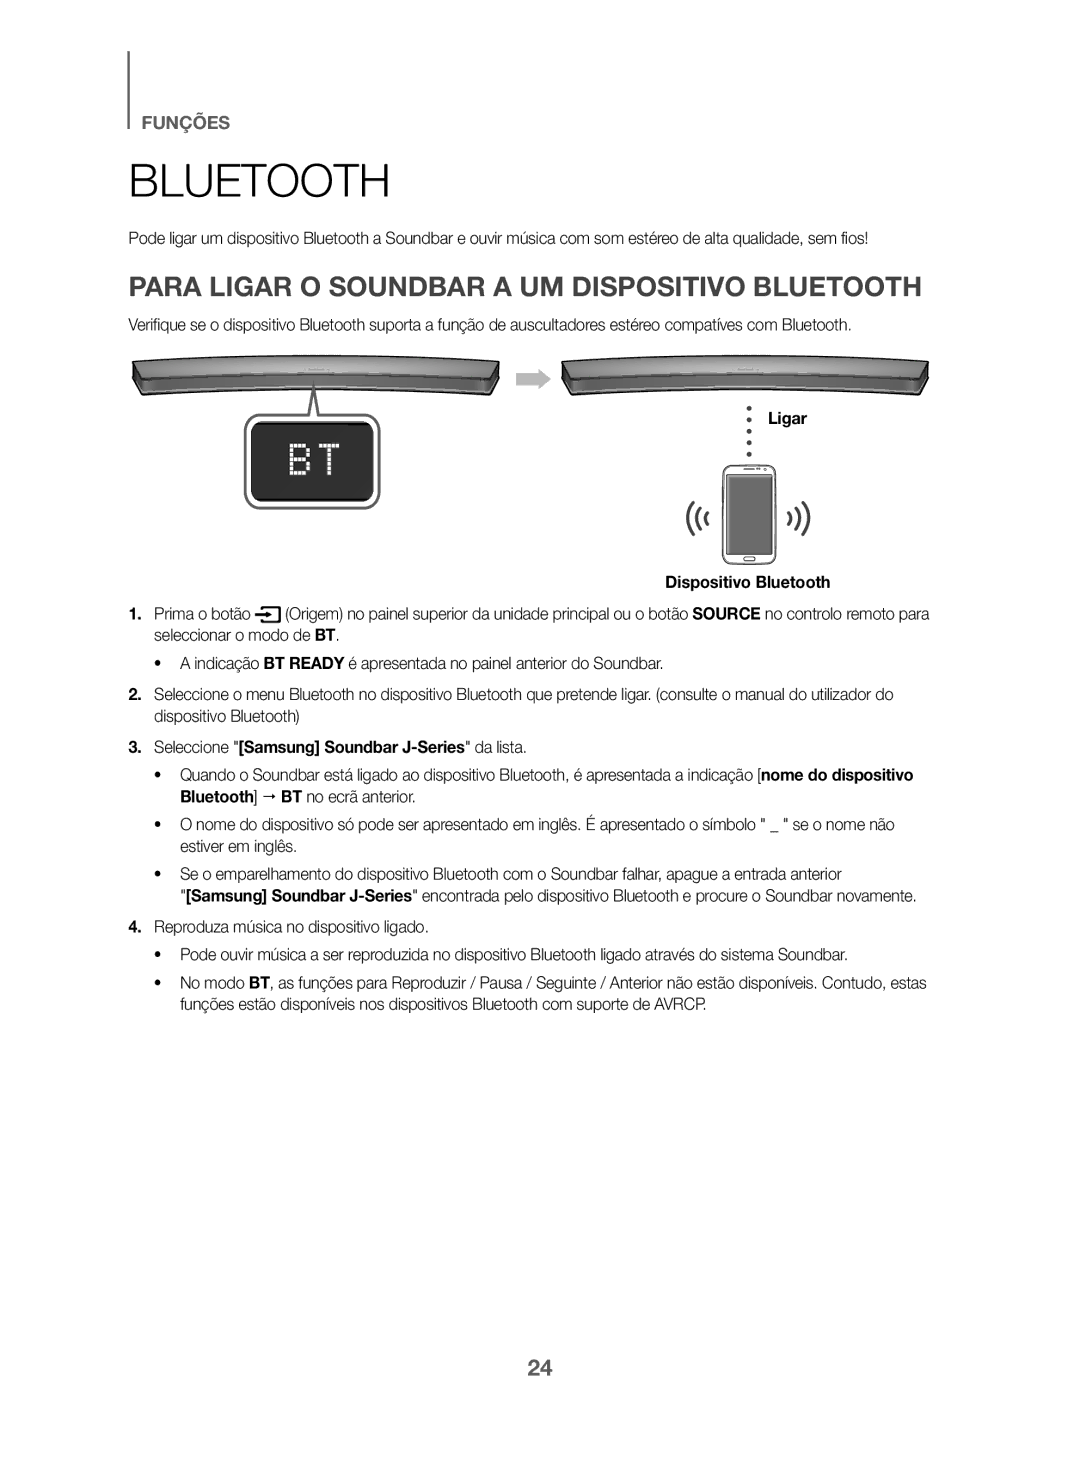 Samsung HW-J6001/ZF, HW-J6000/ZF manual Para Ligar O Soundbar a UM Dispositivo Bluetooth, Ligar Dispositivo Bluetooth 